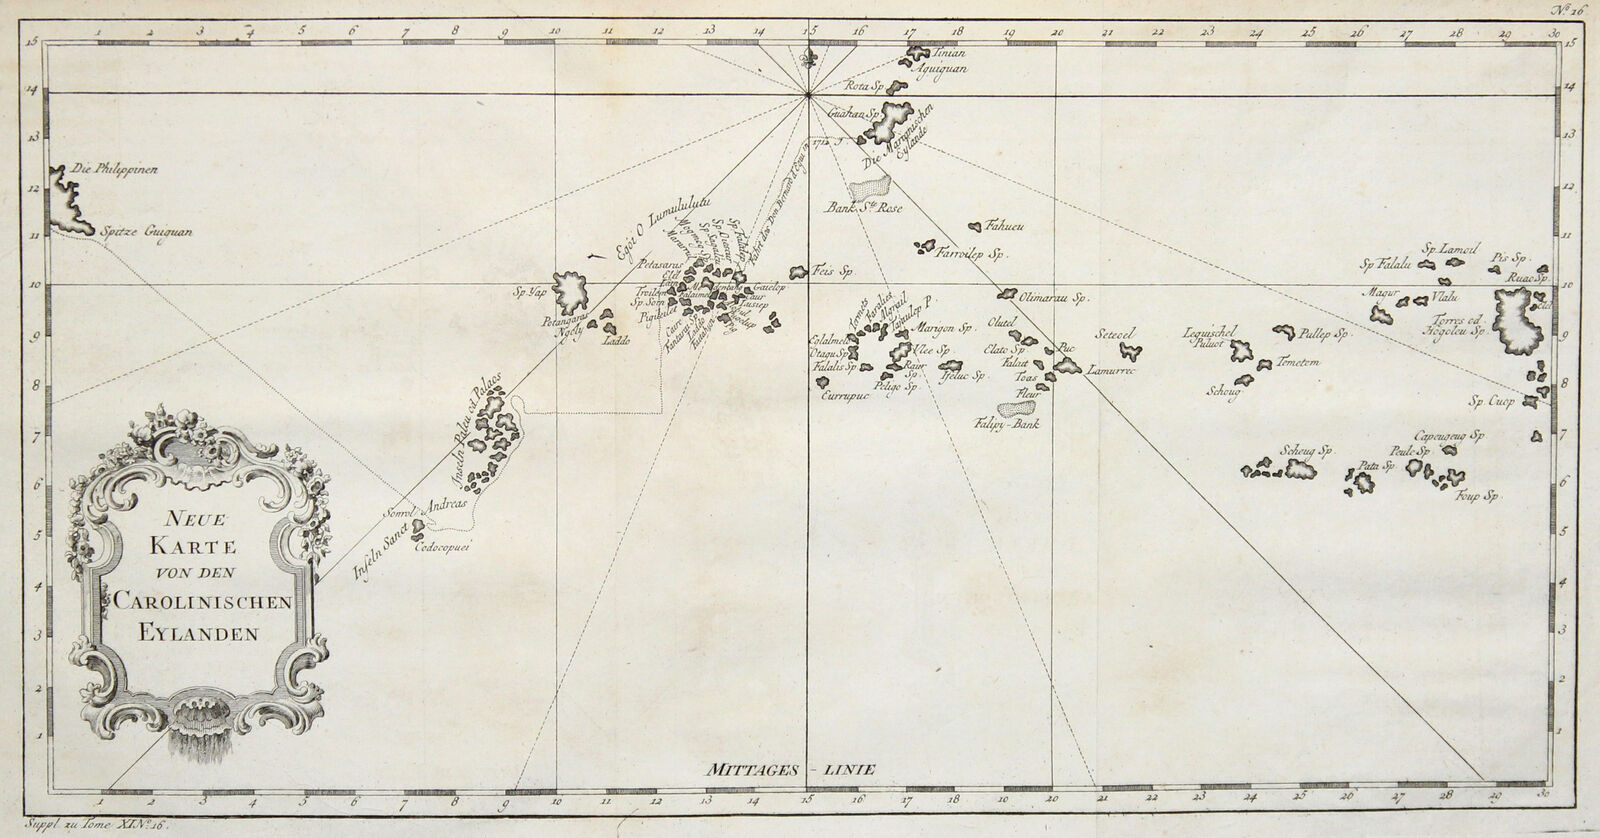 Cette vieille carte allemande de la Micronésie ne permet pratiquement pas d’identifier les îles et atolls, dans la mesure où presque tous les noms ont changé.